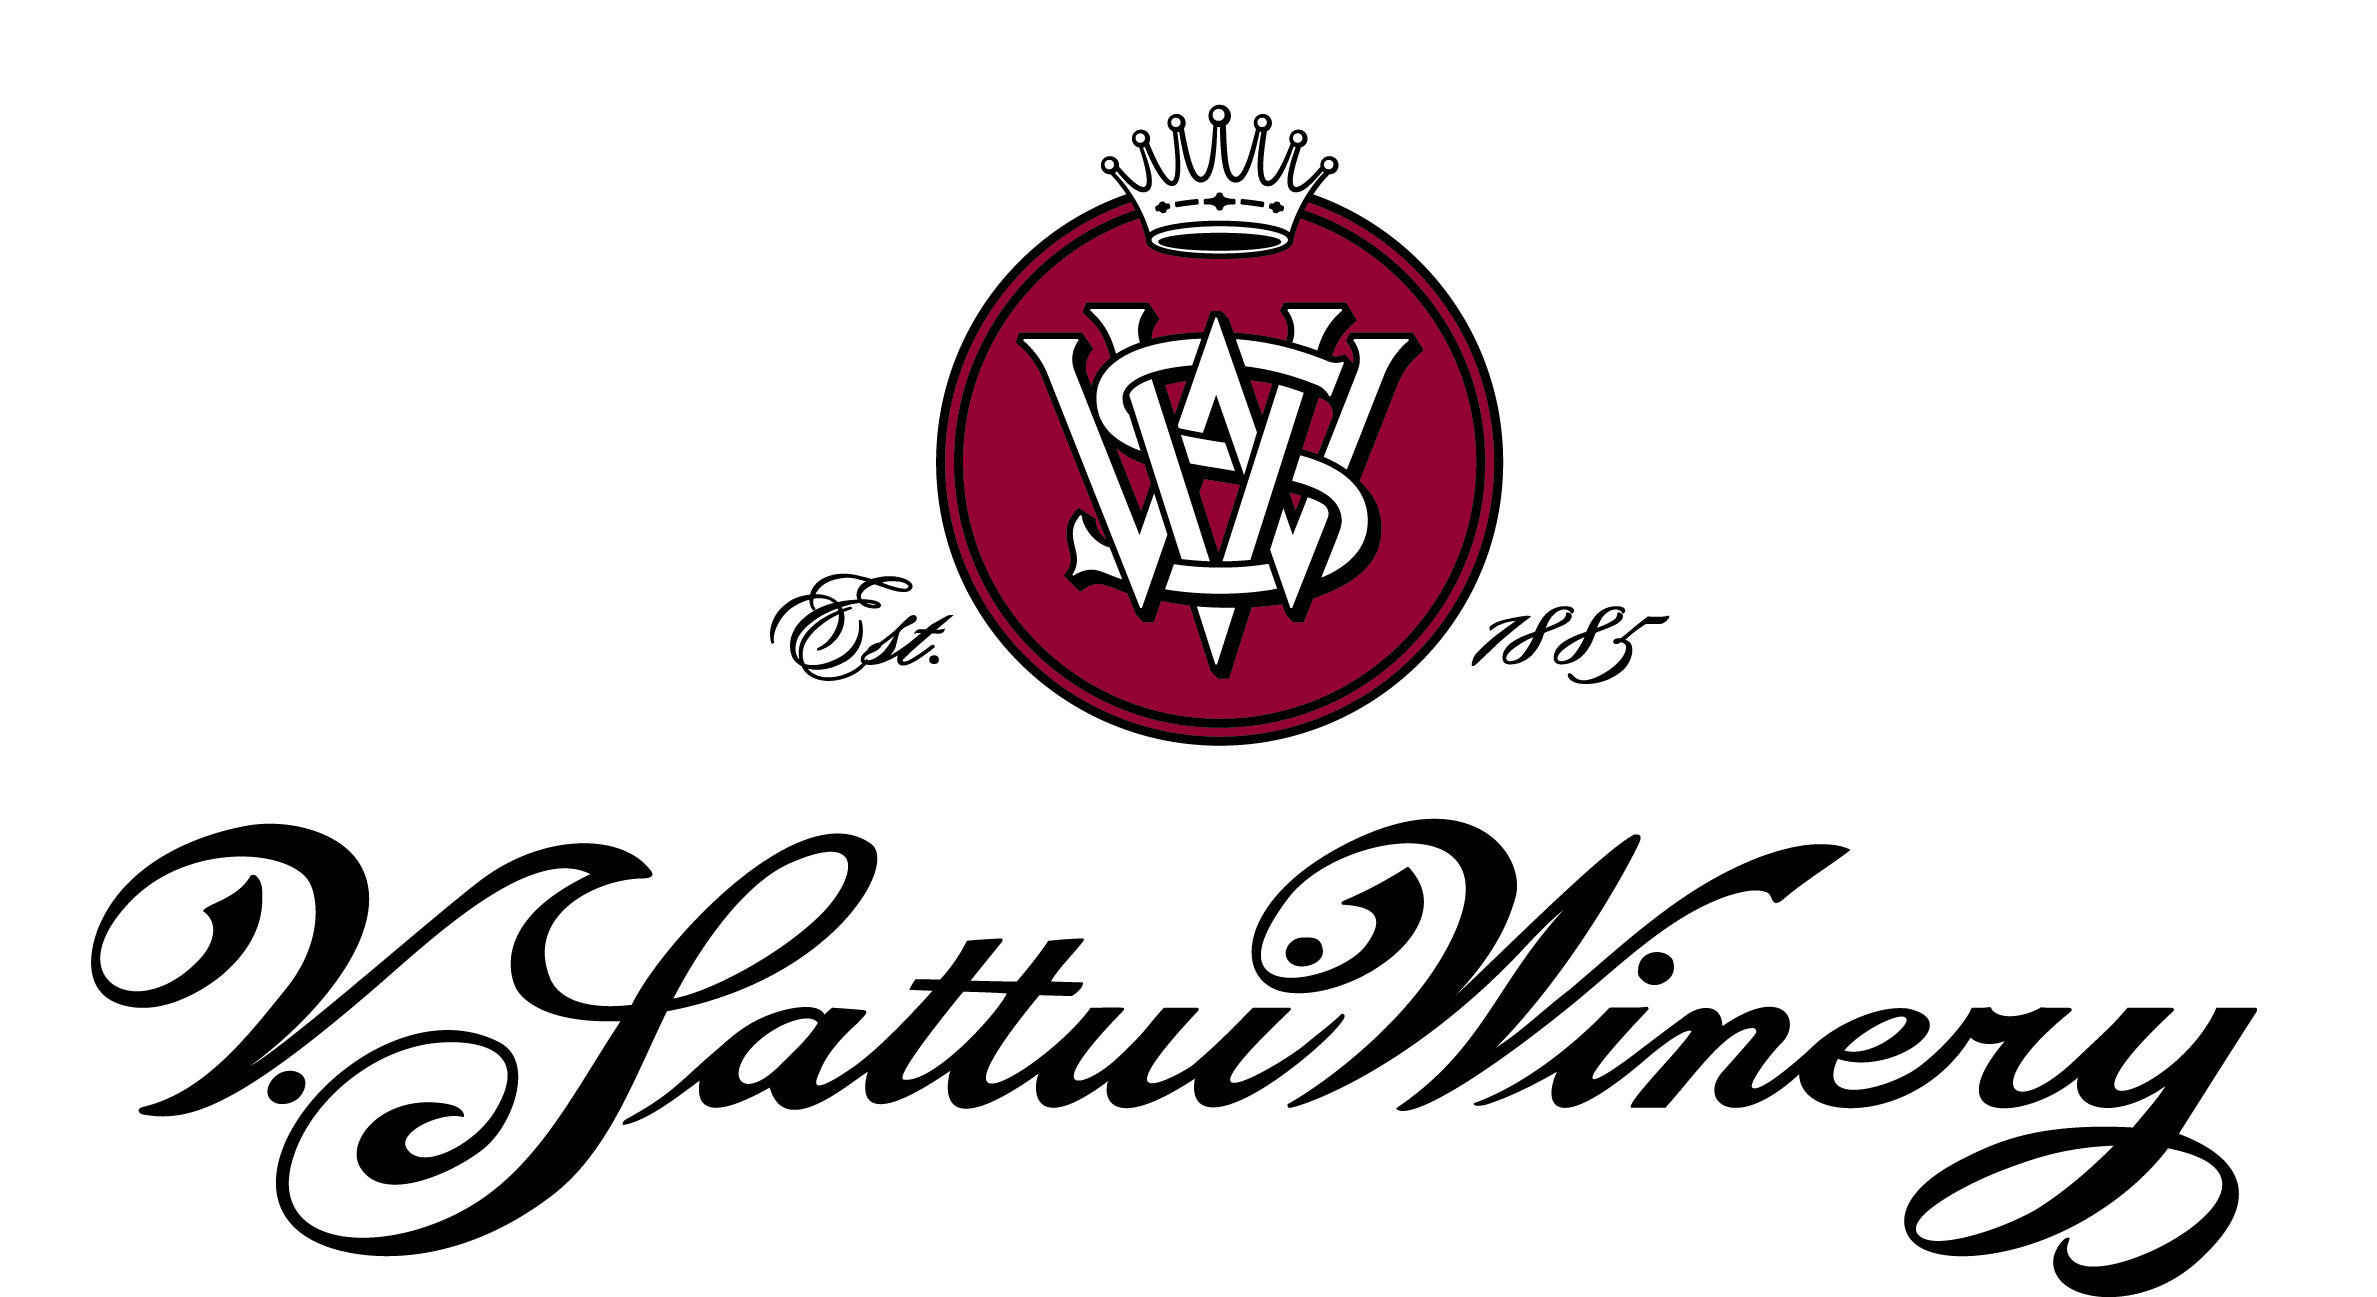 Wine.com Logo - V. Sattui Winery: Great wine from Napa Valley